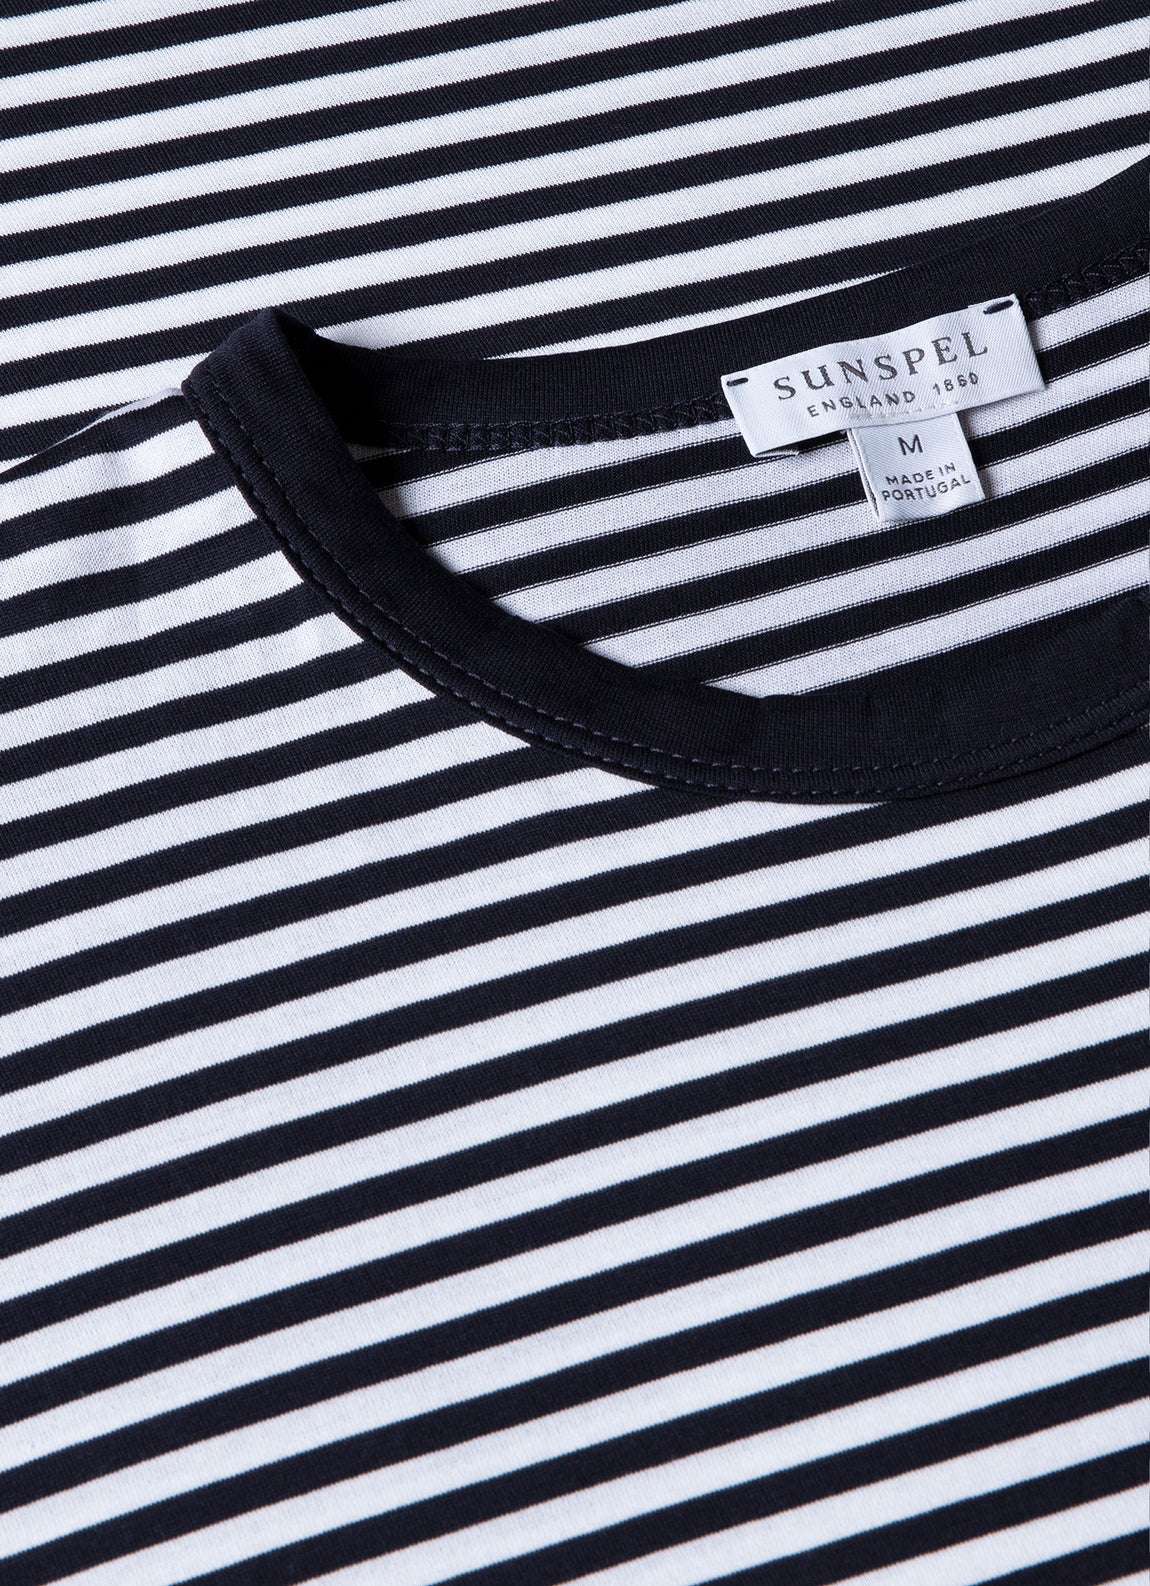 Men's Classic T-shirt in Navy/White English Stripe | Sunspel